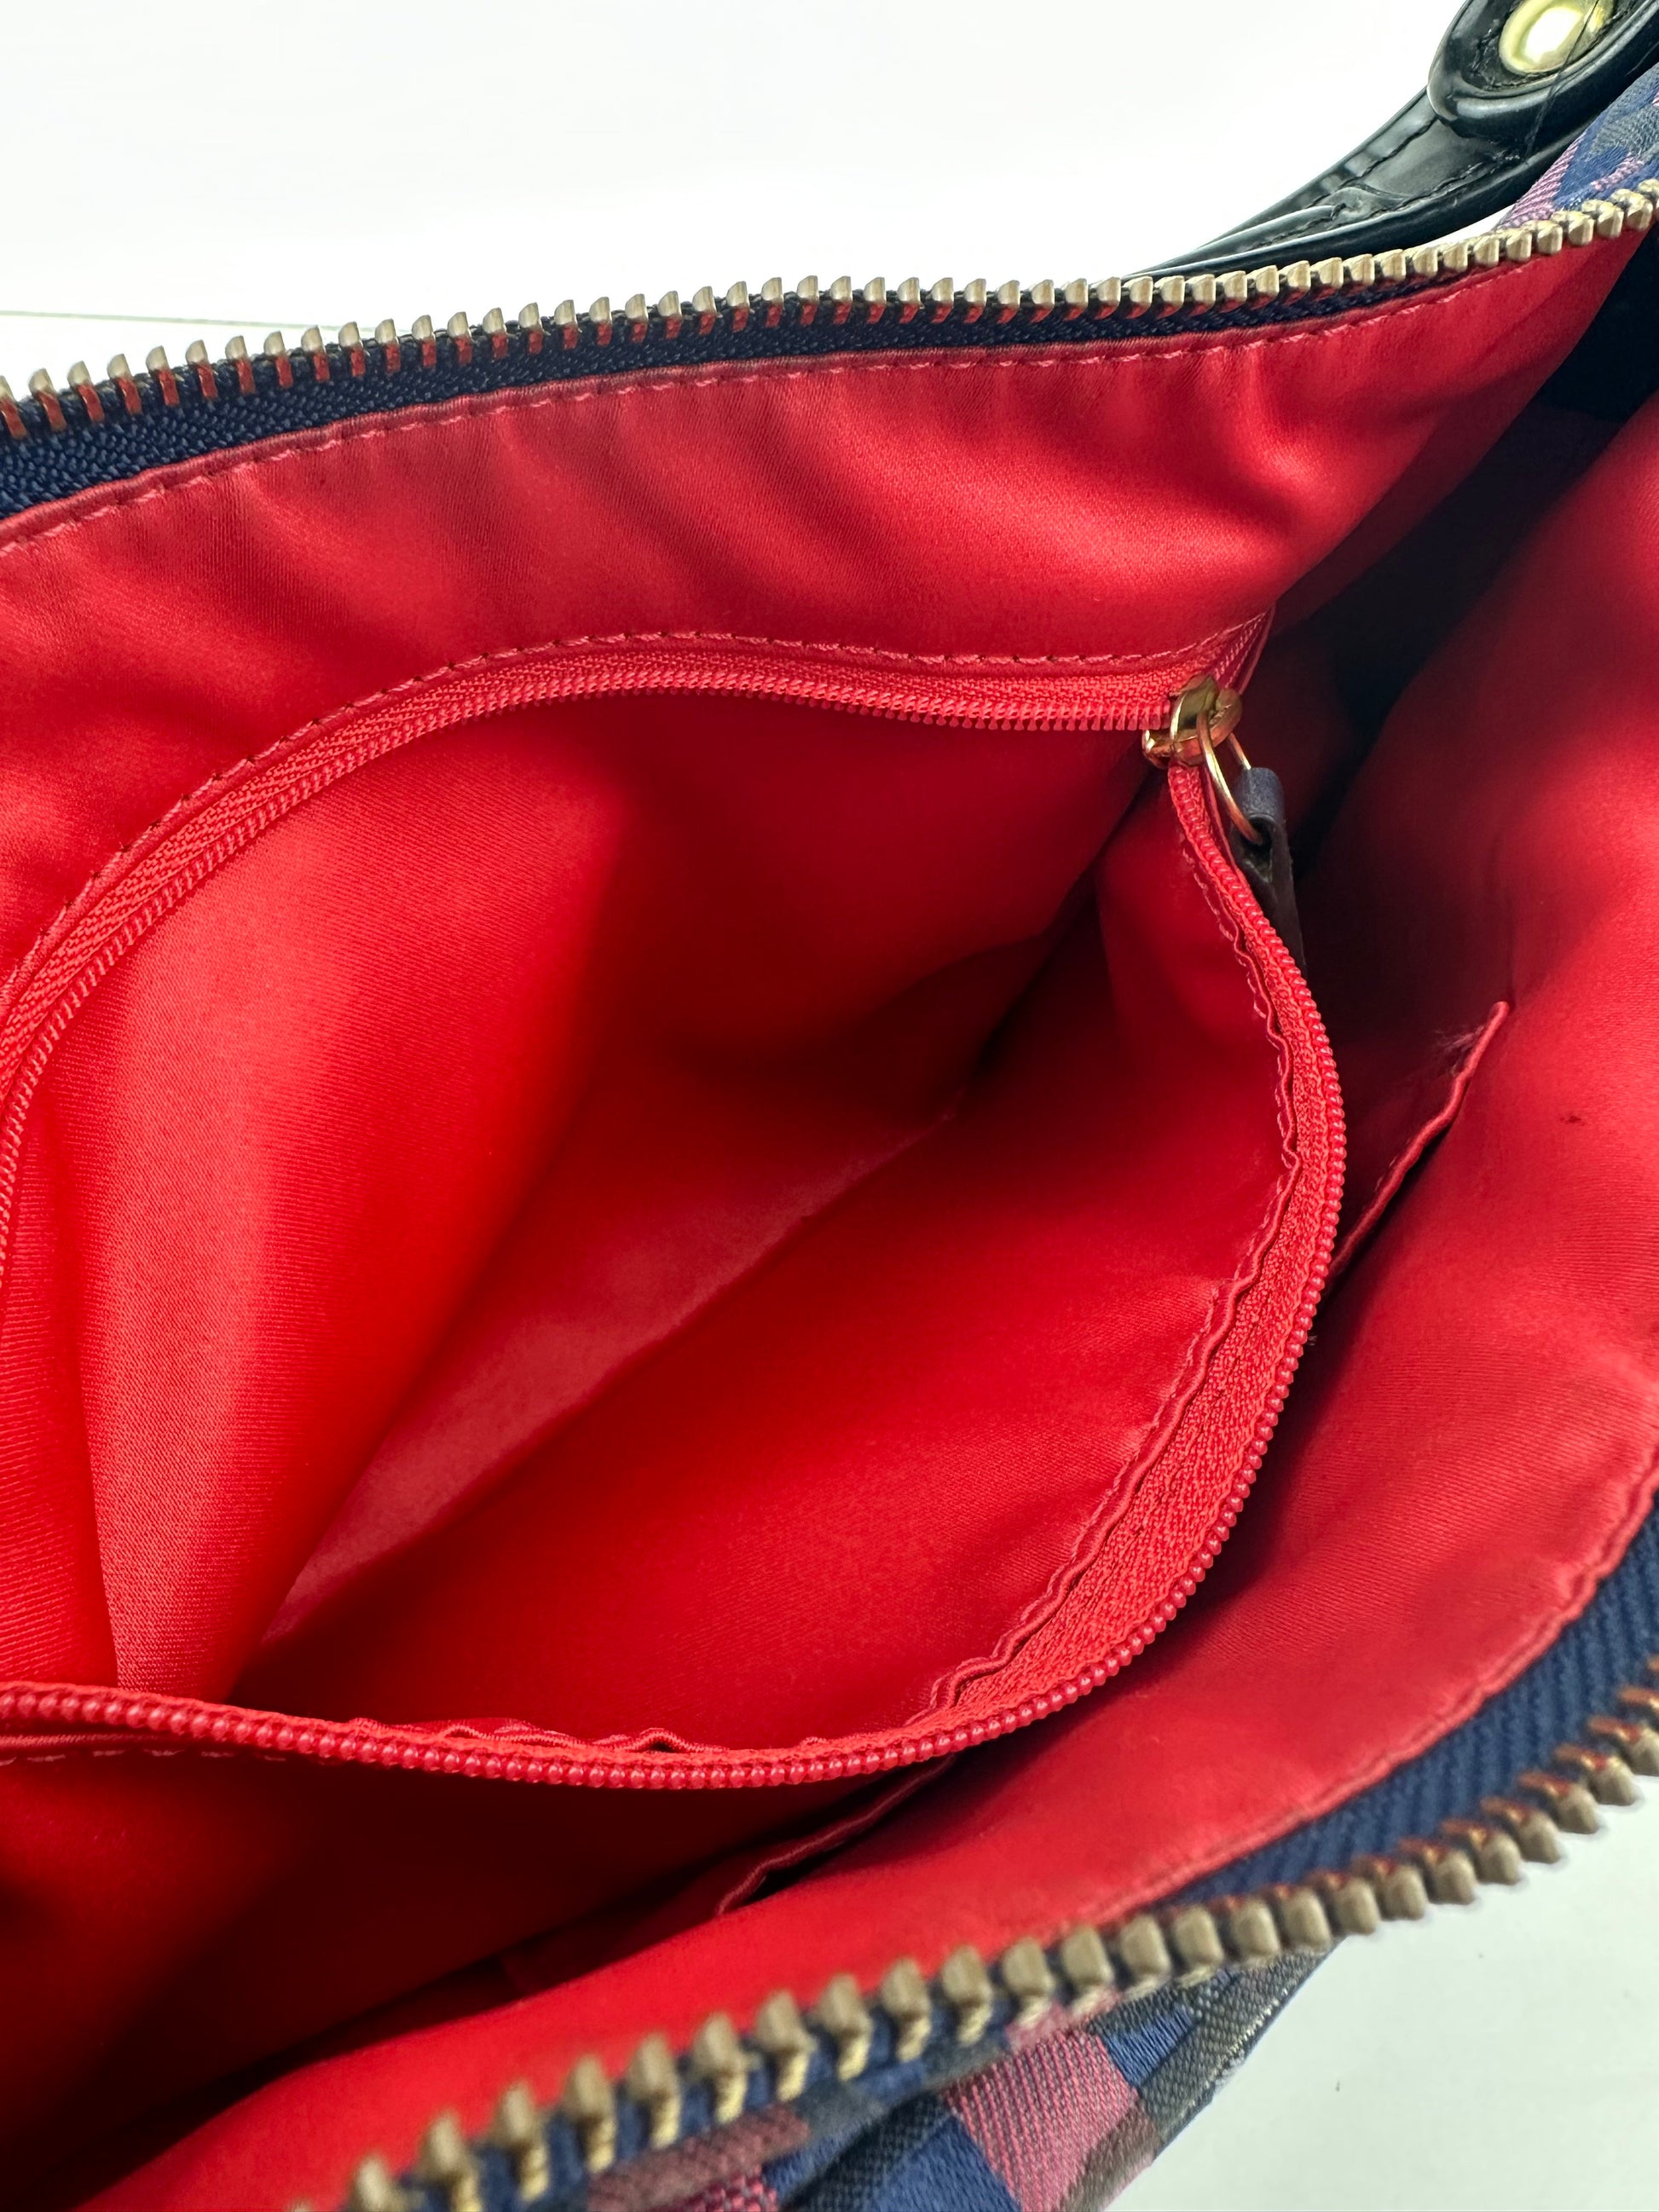 Poppy Tartan Groovy Check Handbag - Zage Vintage